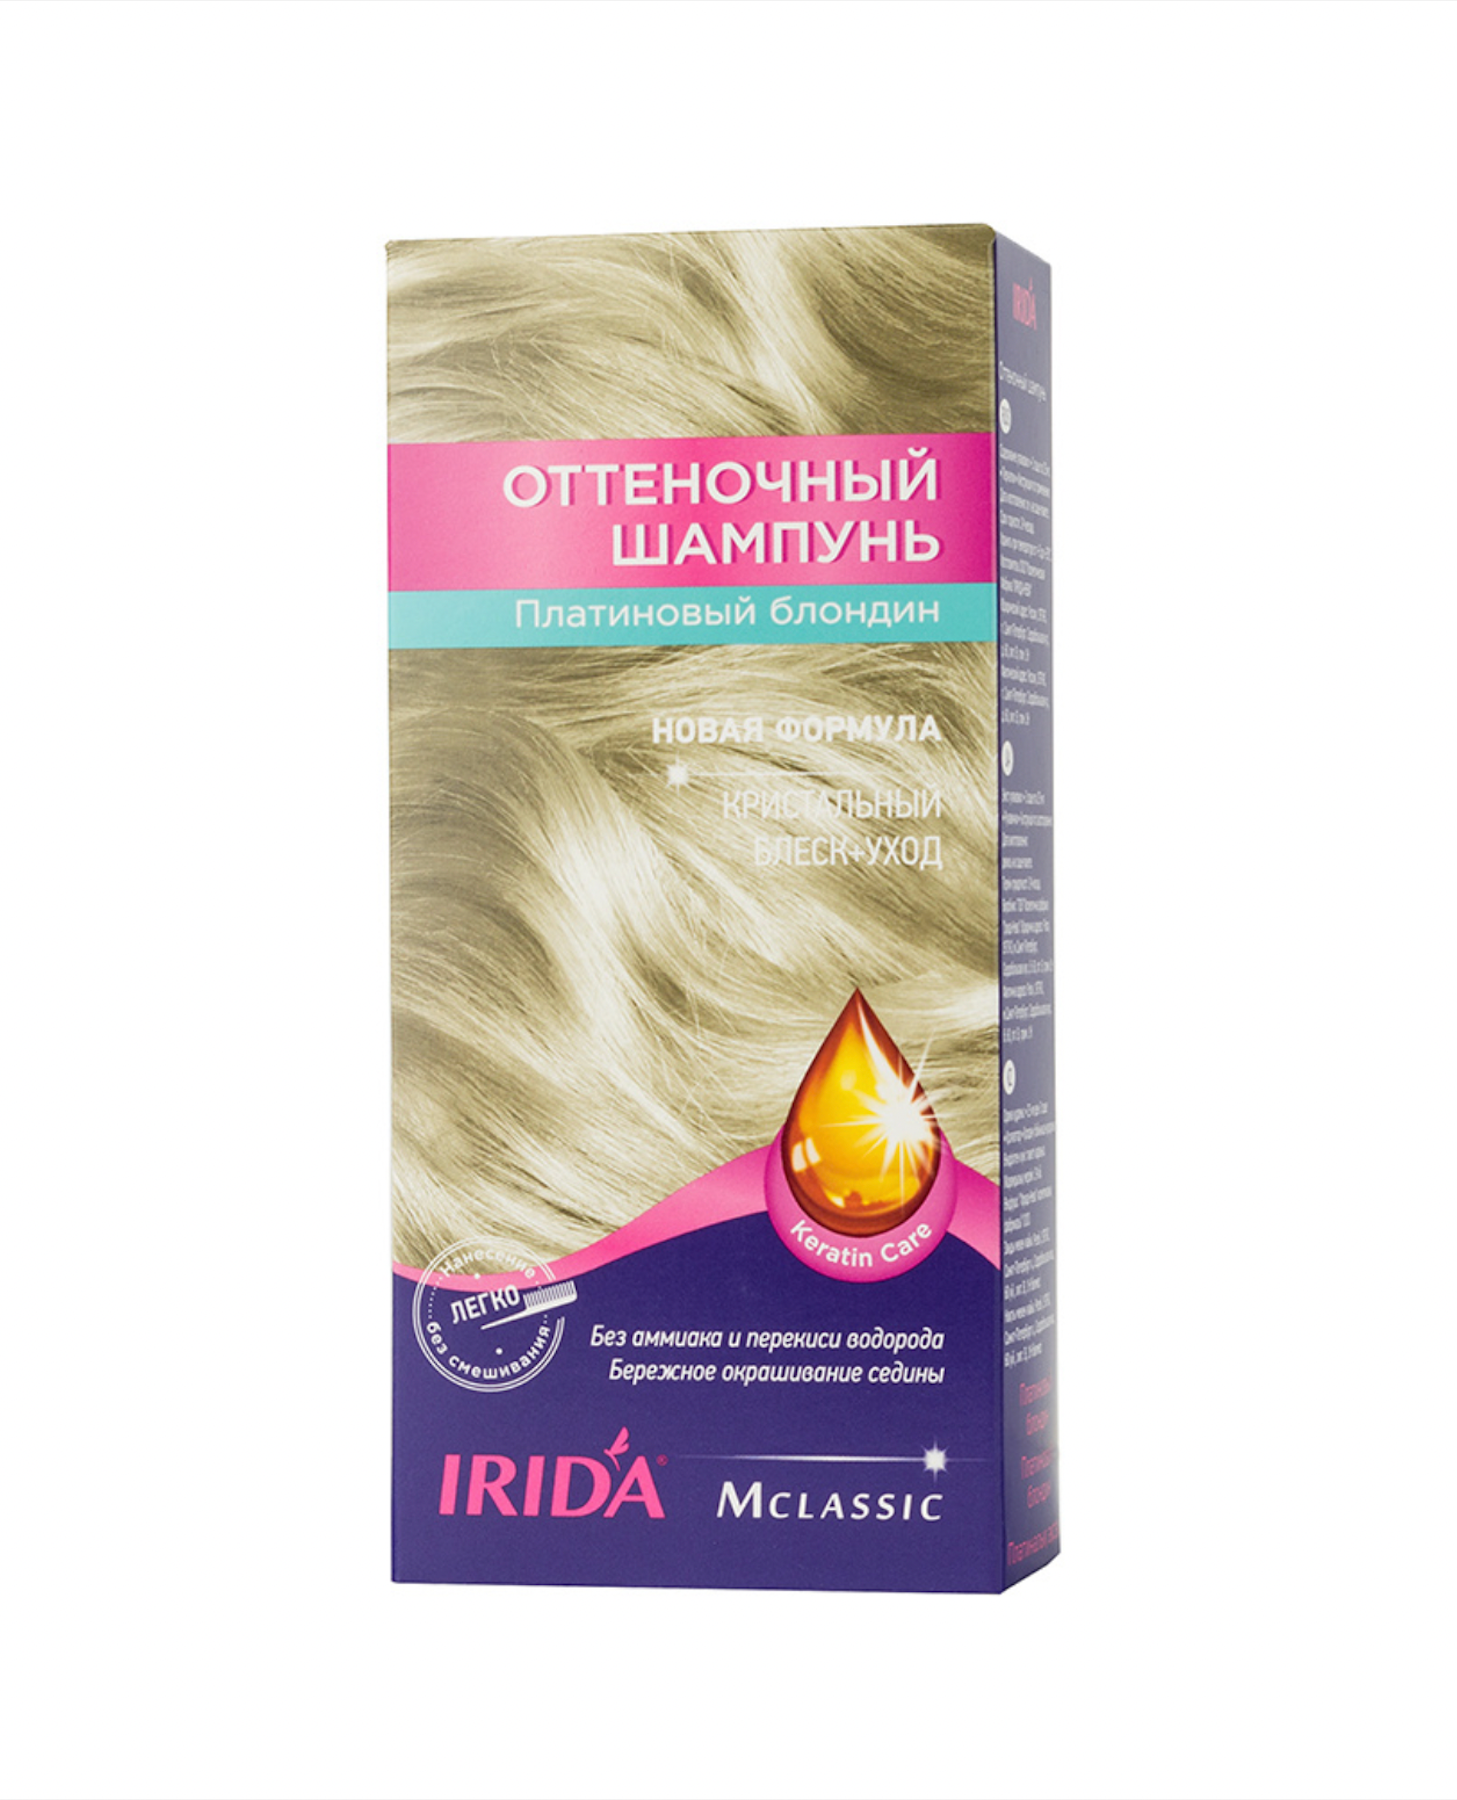 Ирида / Irida М Classic - Оттеночный шампунь для волос блеск-уход тон Платиновый блондин 75 мл